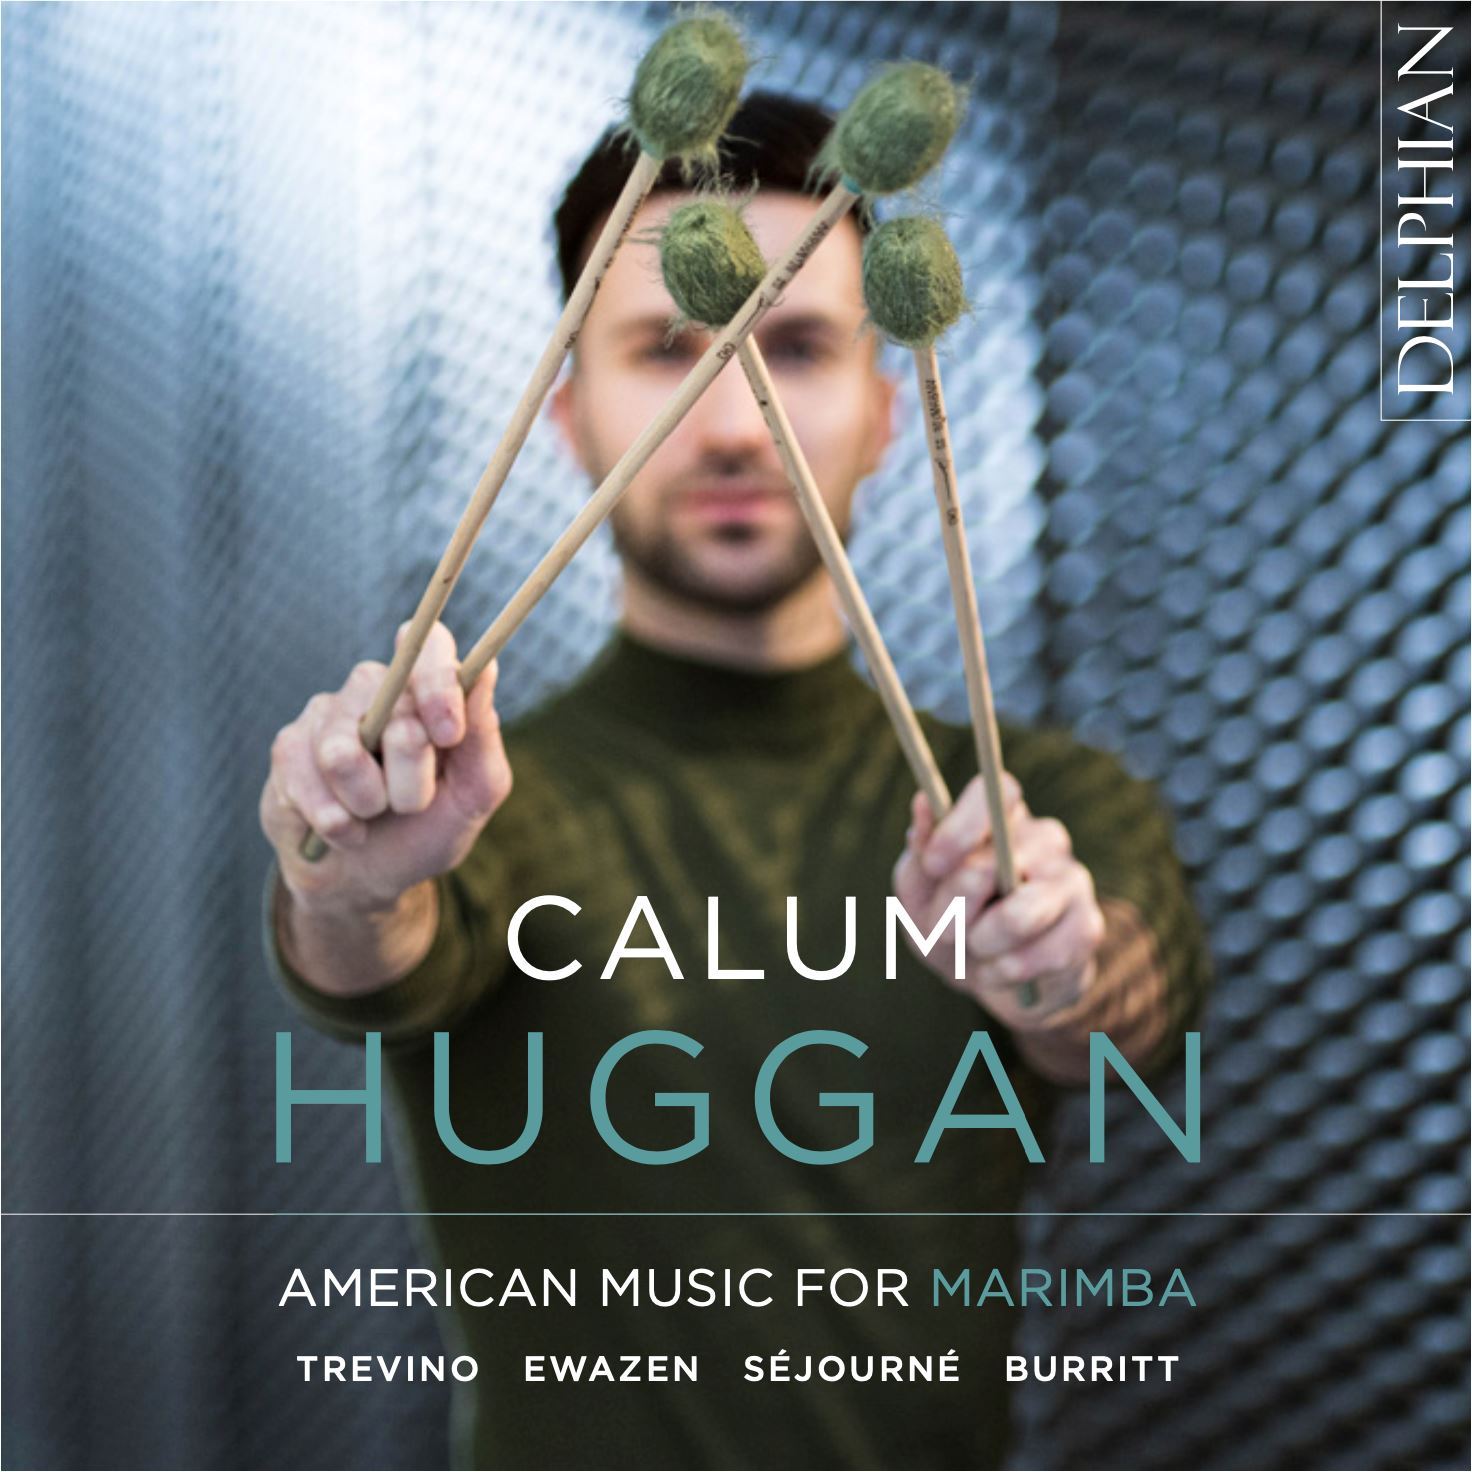 Calum Huggan: American Music for Marimba Delphian Records